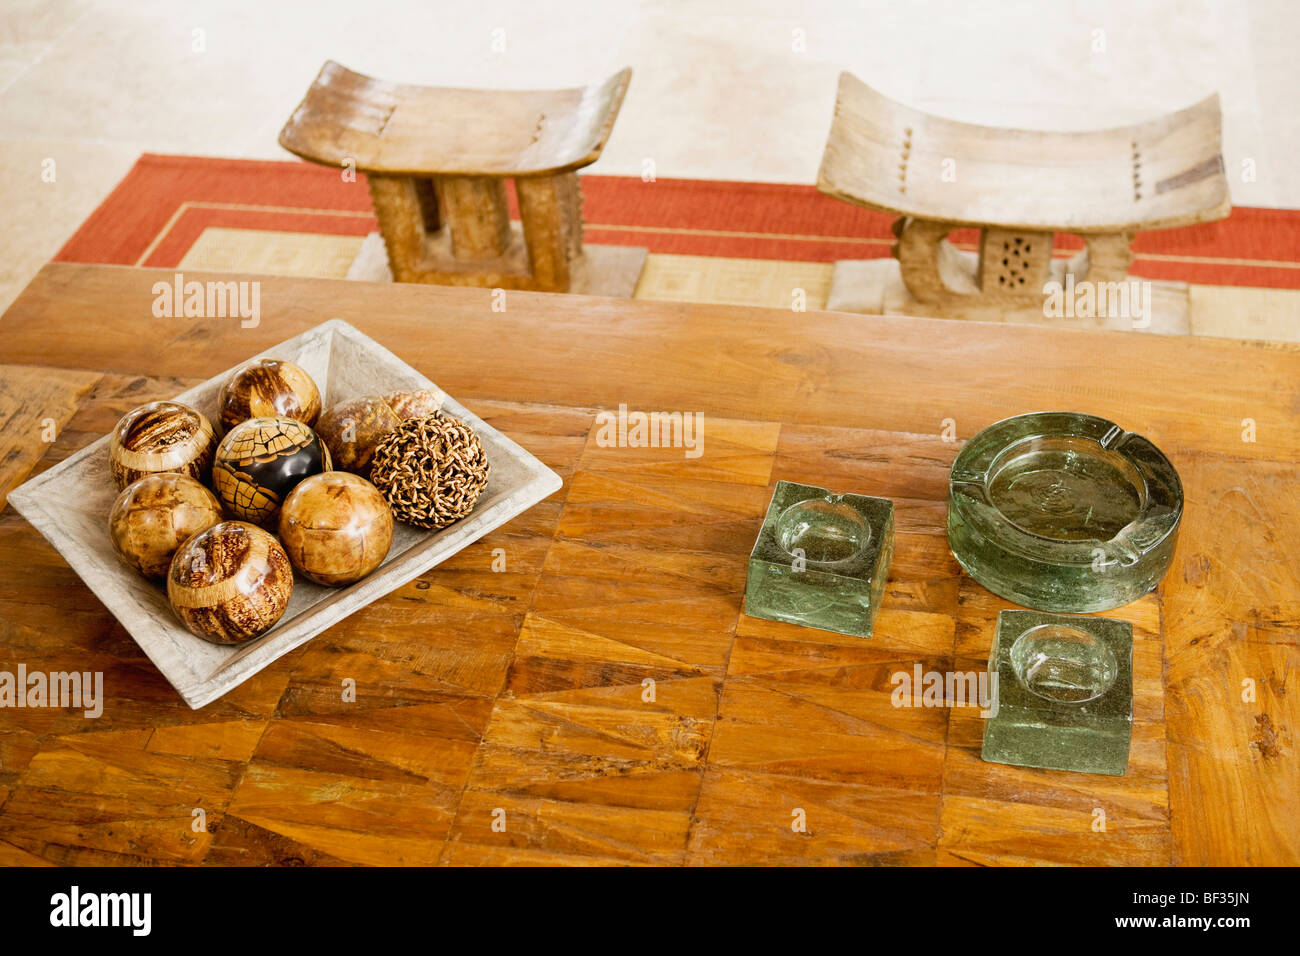 Tablett mit Deko-Kugeln und Aschenbecher auf dem Tisch Stockfotografie -  Alamy